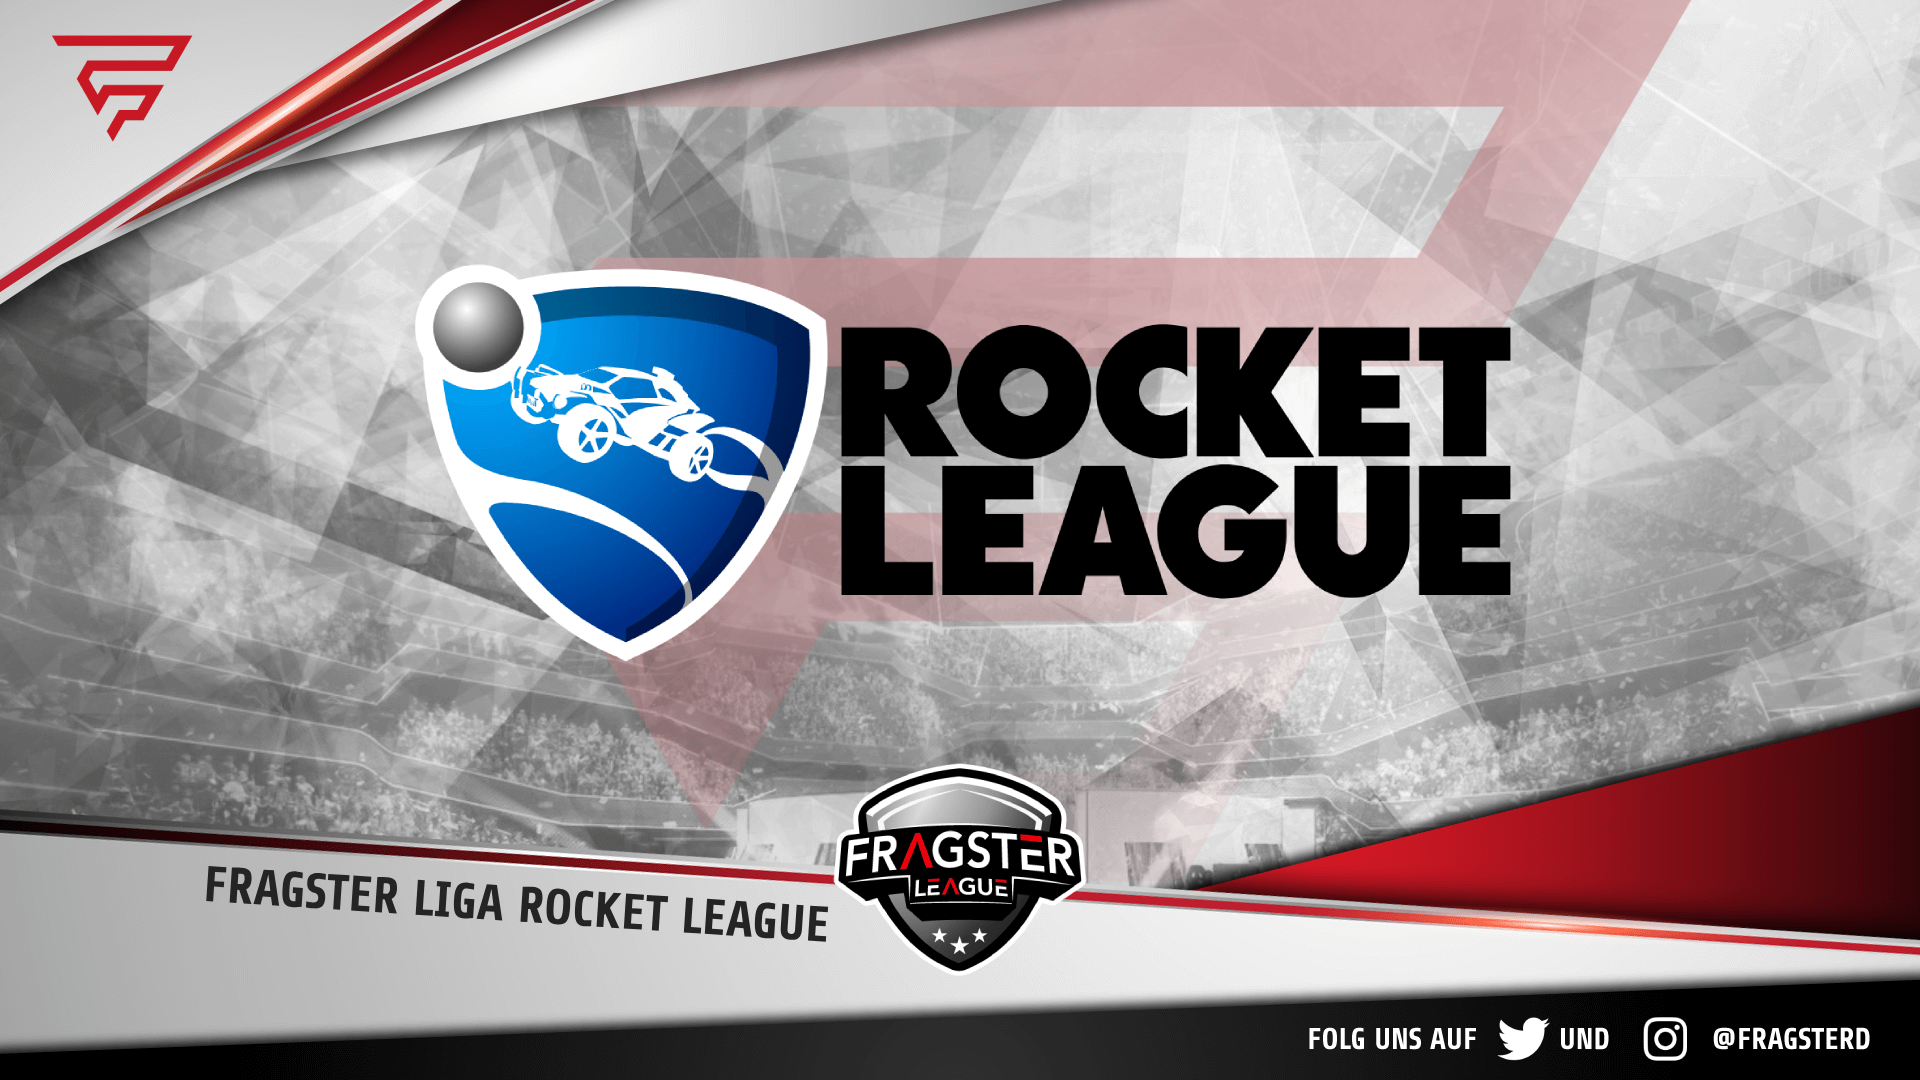 fragster liga rocket league season 1 details informationen title